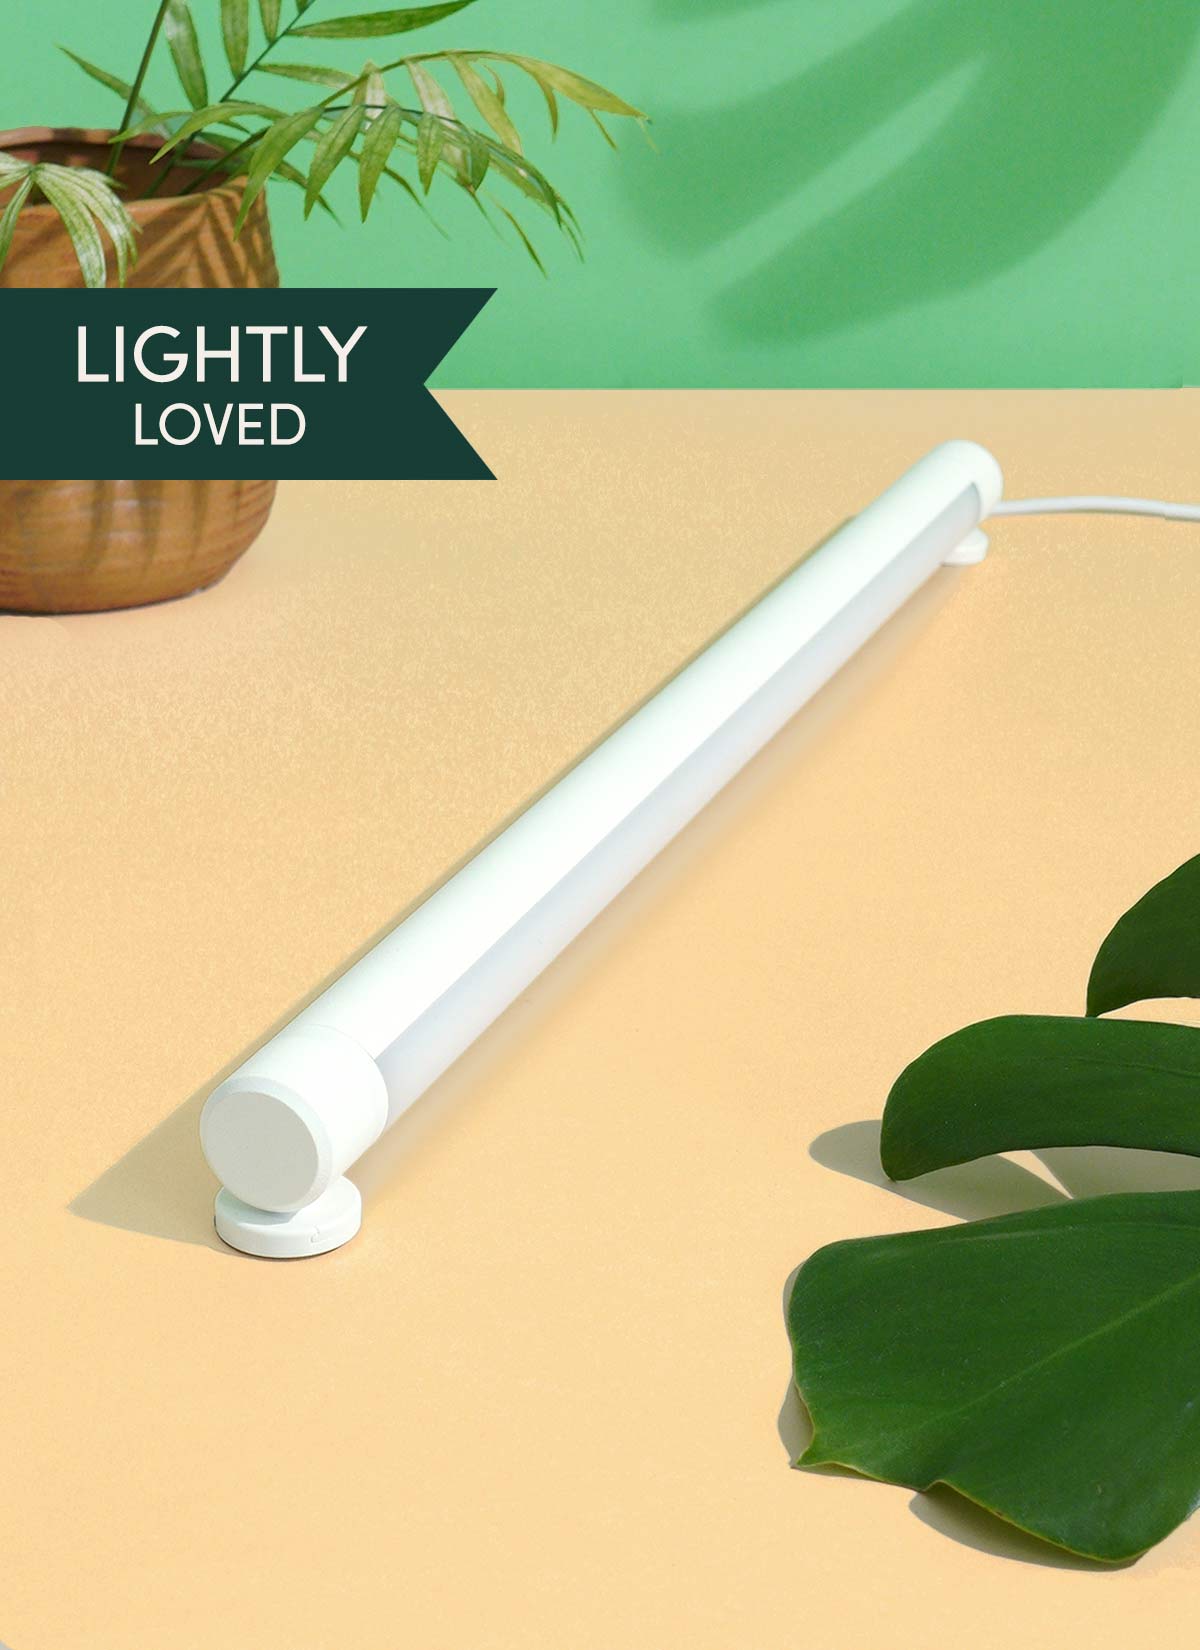 Lampe de culture à LED Grove™ remise à neuf - Légèrement aimée